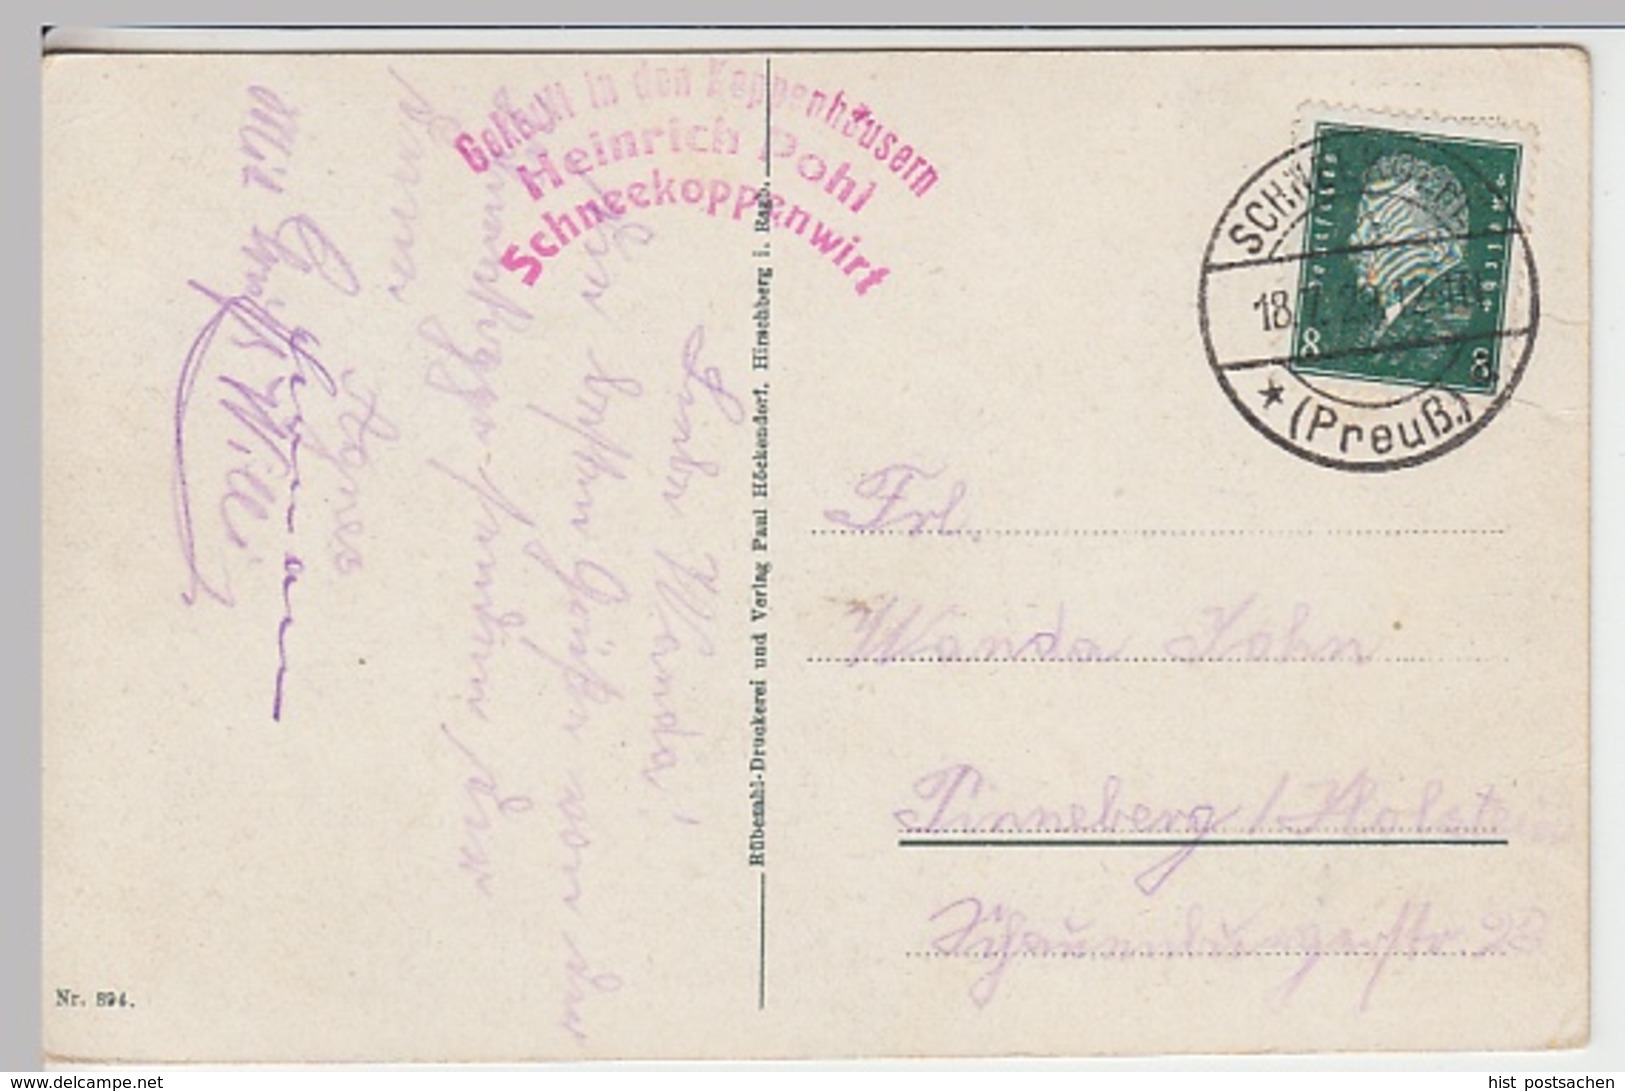 (20854) AK Schneekoppe, Riesengebirge 1929 - Sudeten